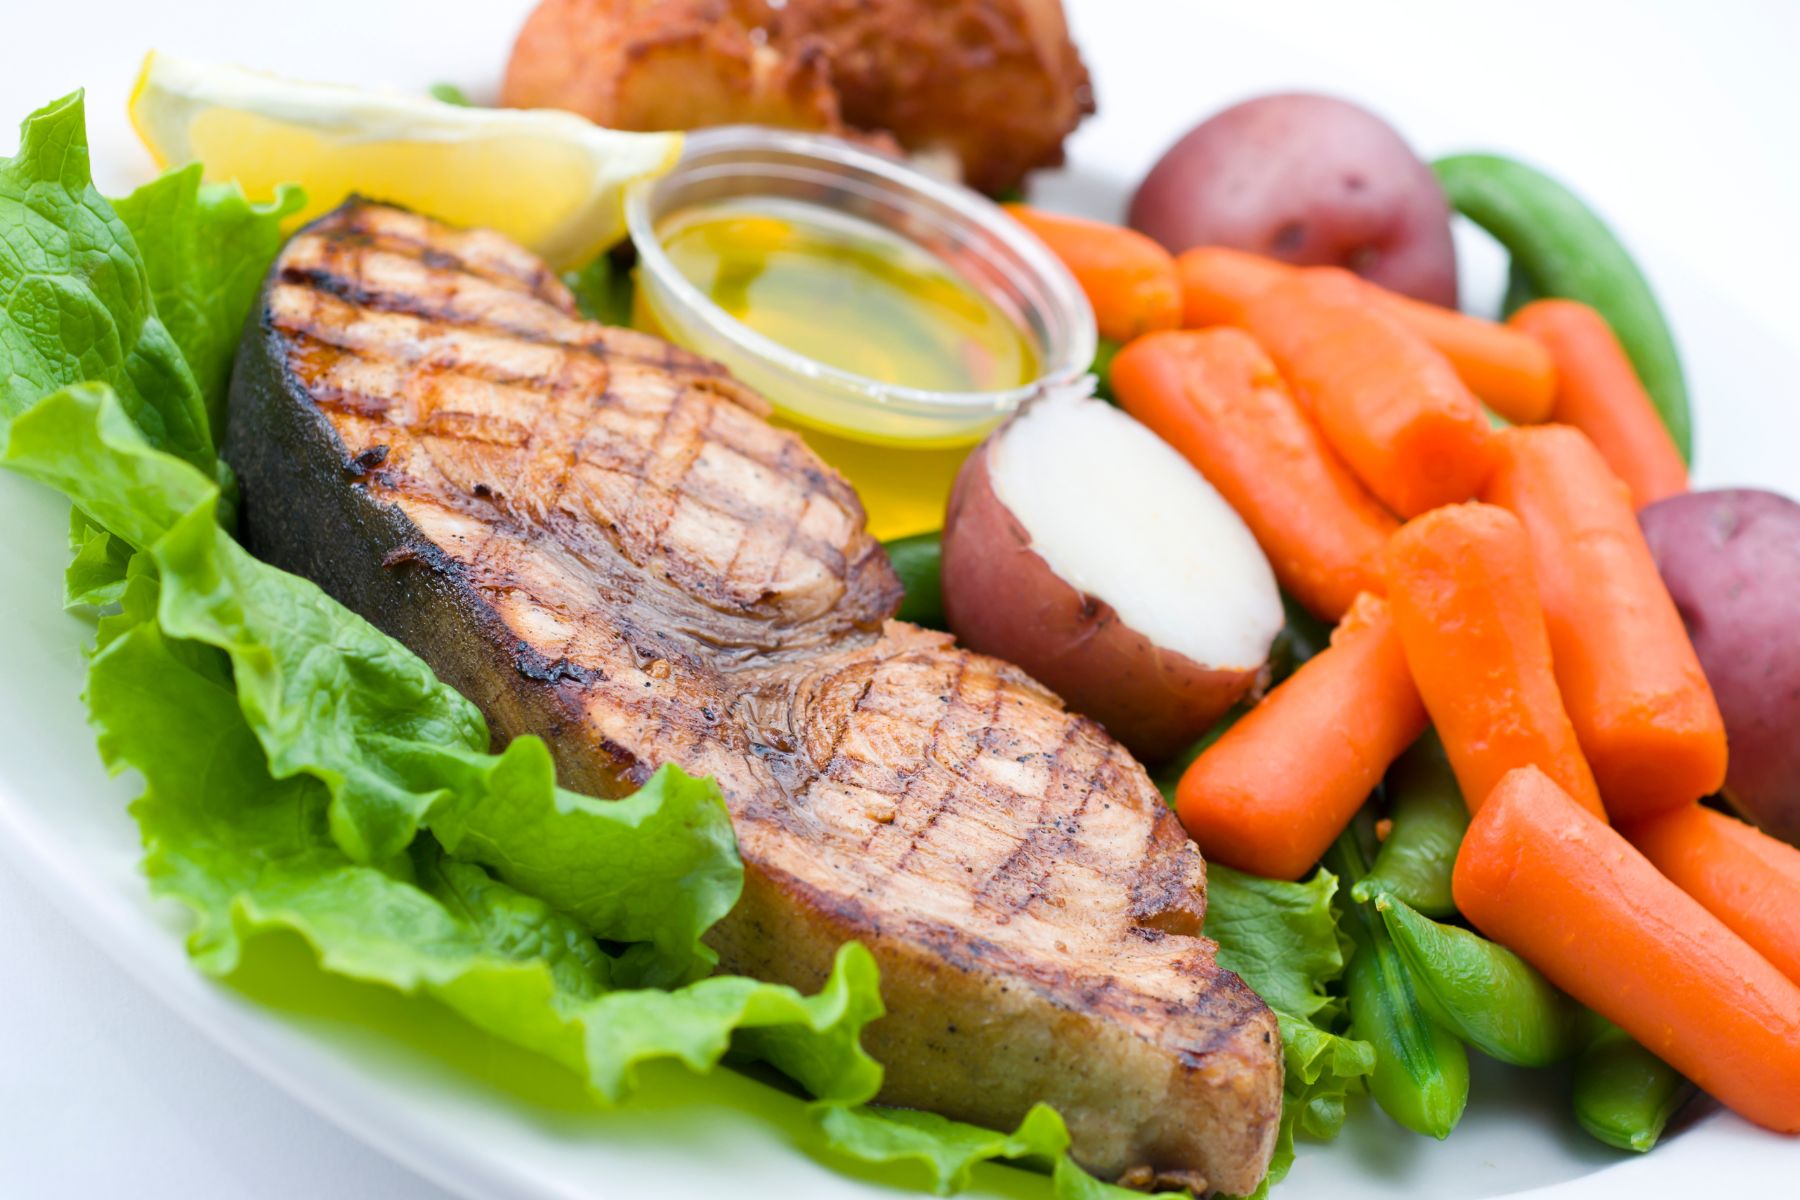 Plato con verduras y otros alimentos (zanahorias, patata, lechuga judías...) y un apetitoso pez espada